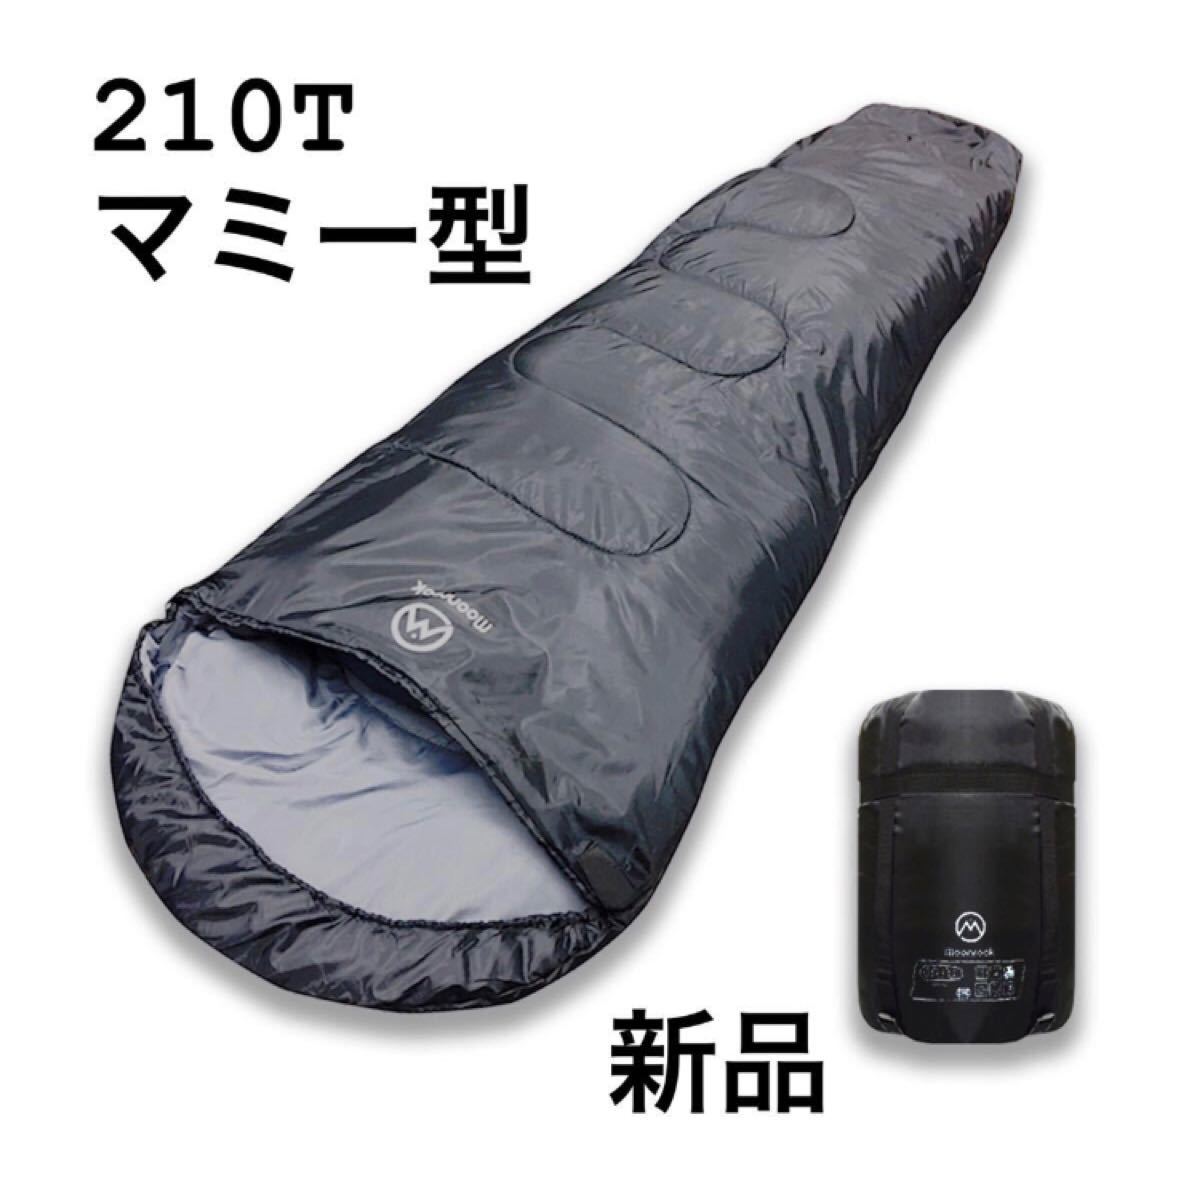 寝袋 シュラフ マミー型 210T 高品質 コンパクト収納 最低使用温度-15℃